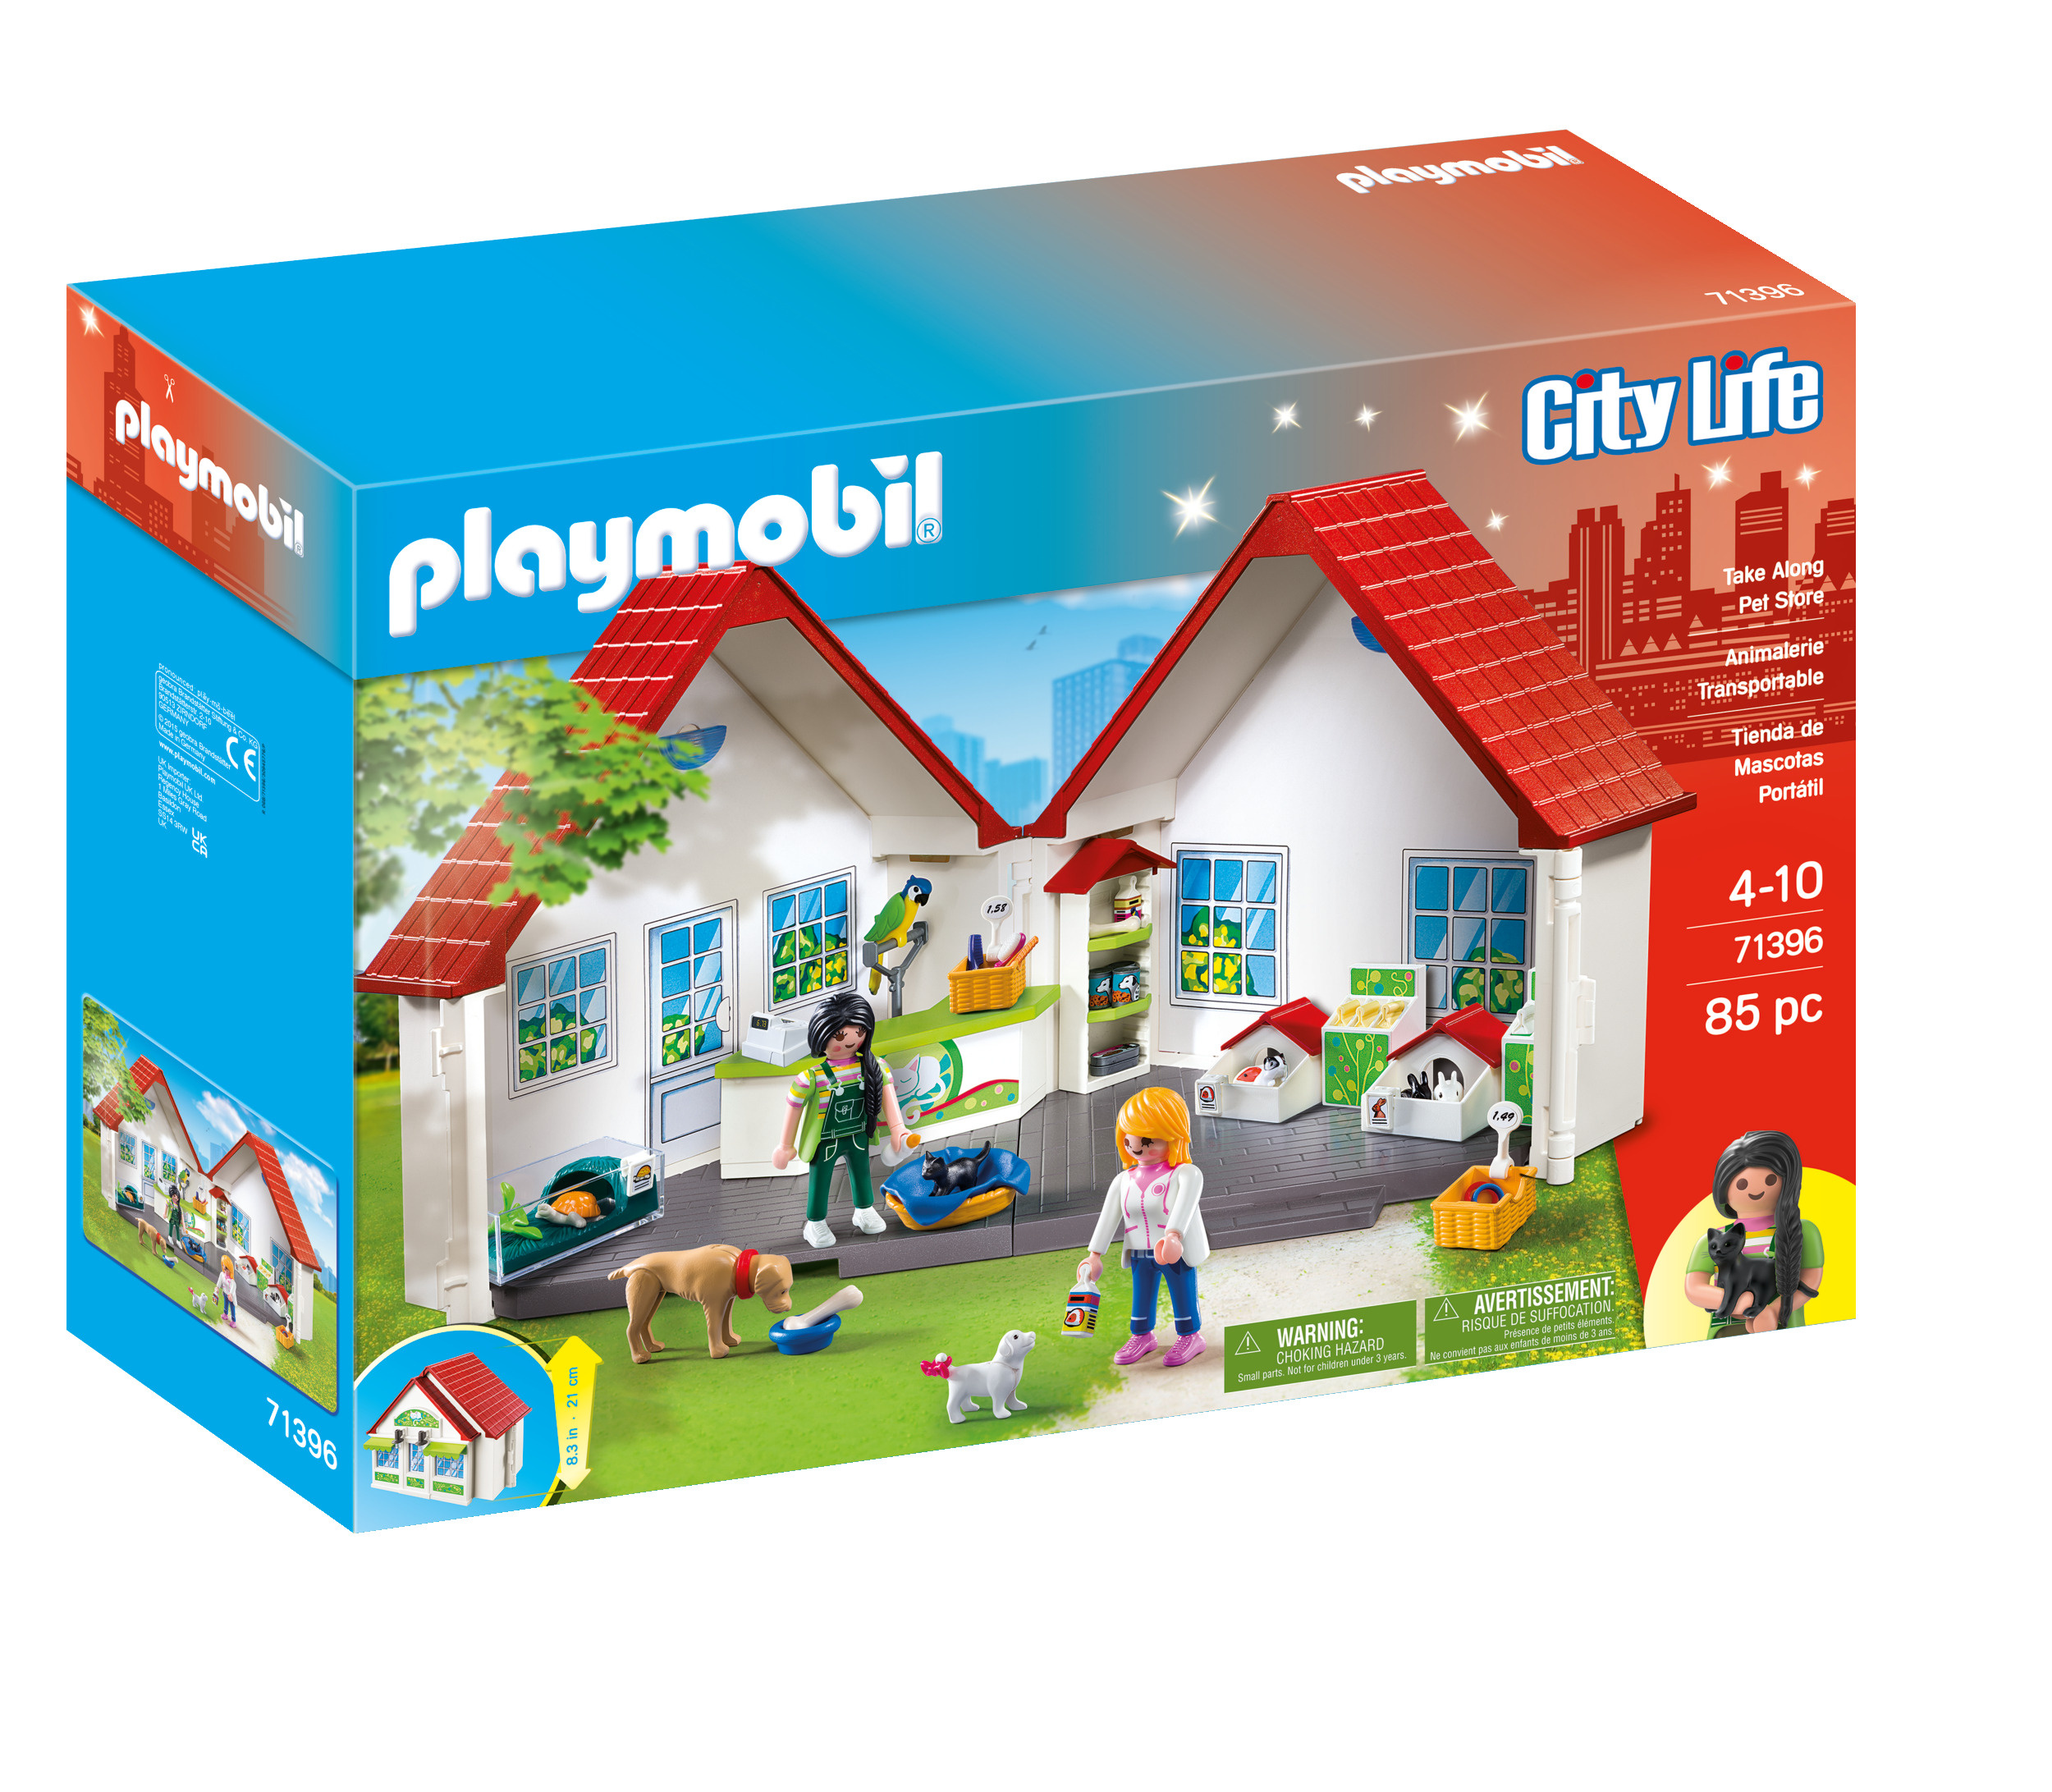 Maison meublée playmobil transportable - Playmobil